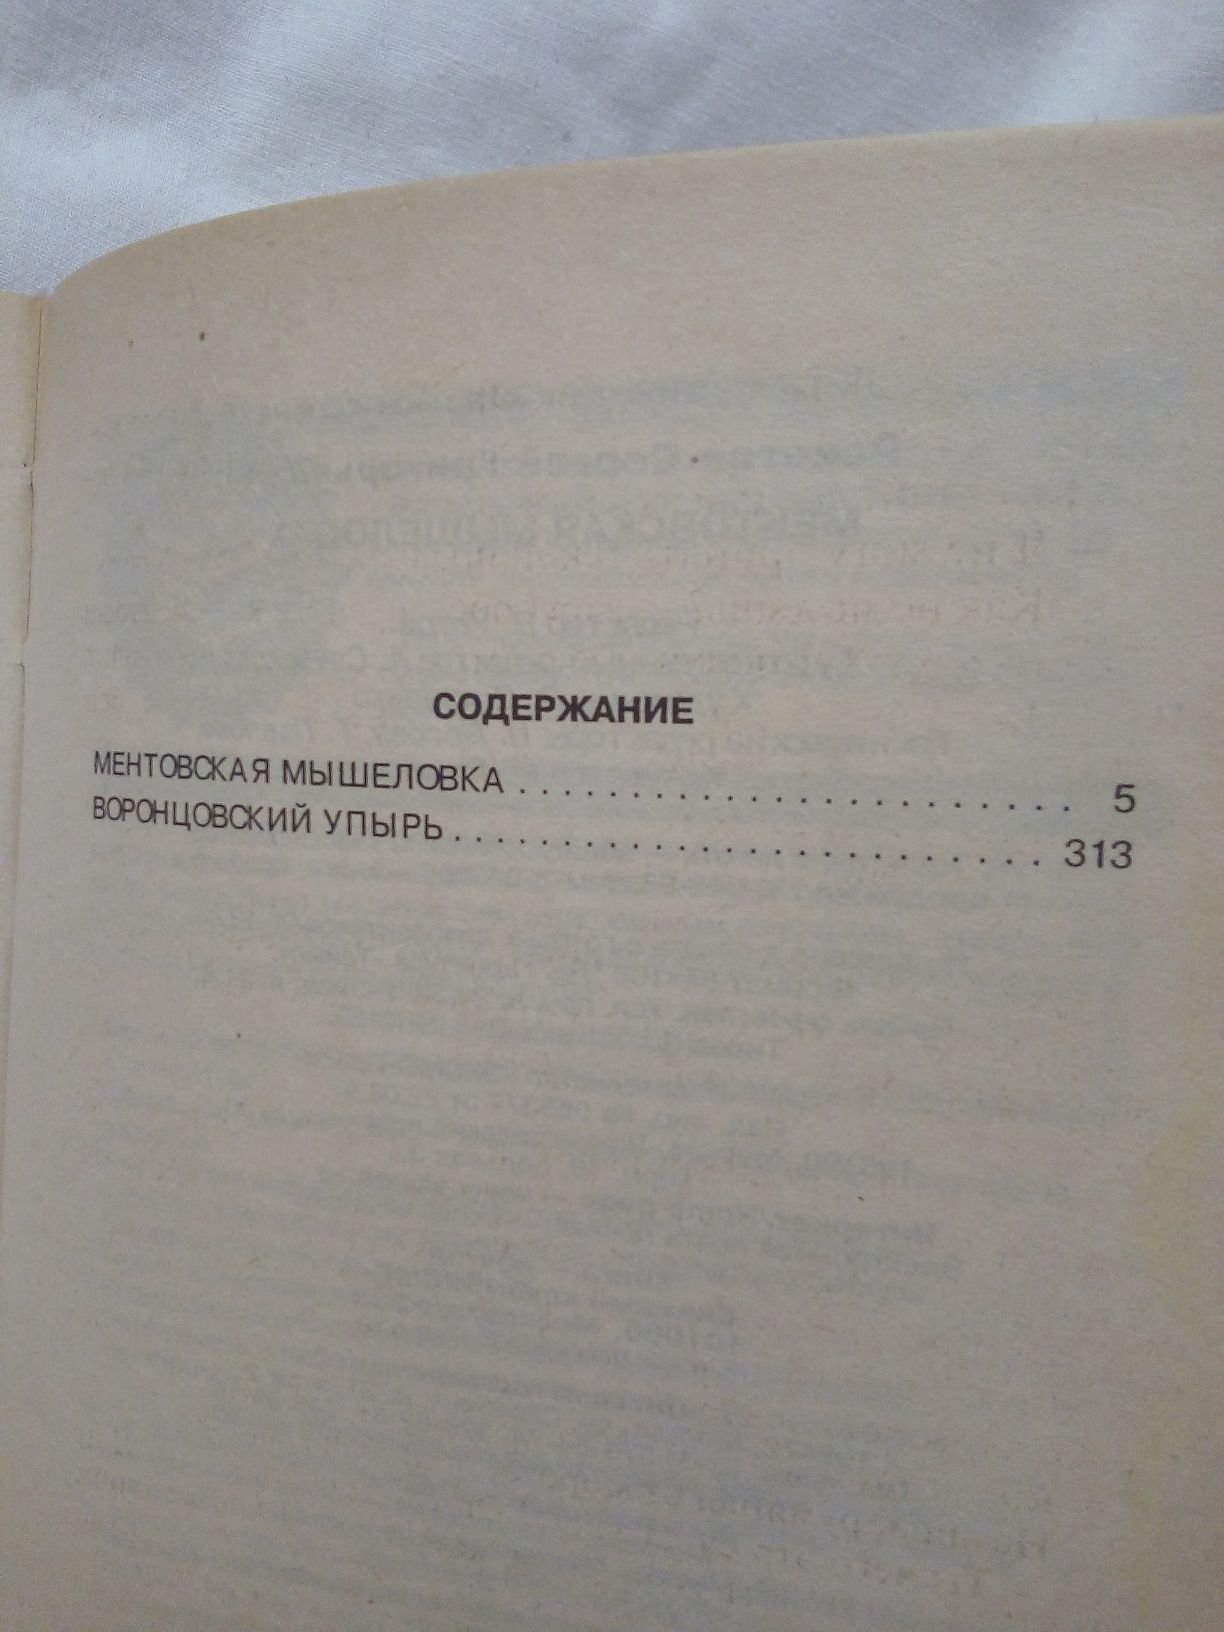 Книга Сергей Рокотов "Ментовская мышеловка".